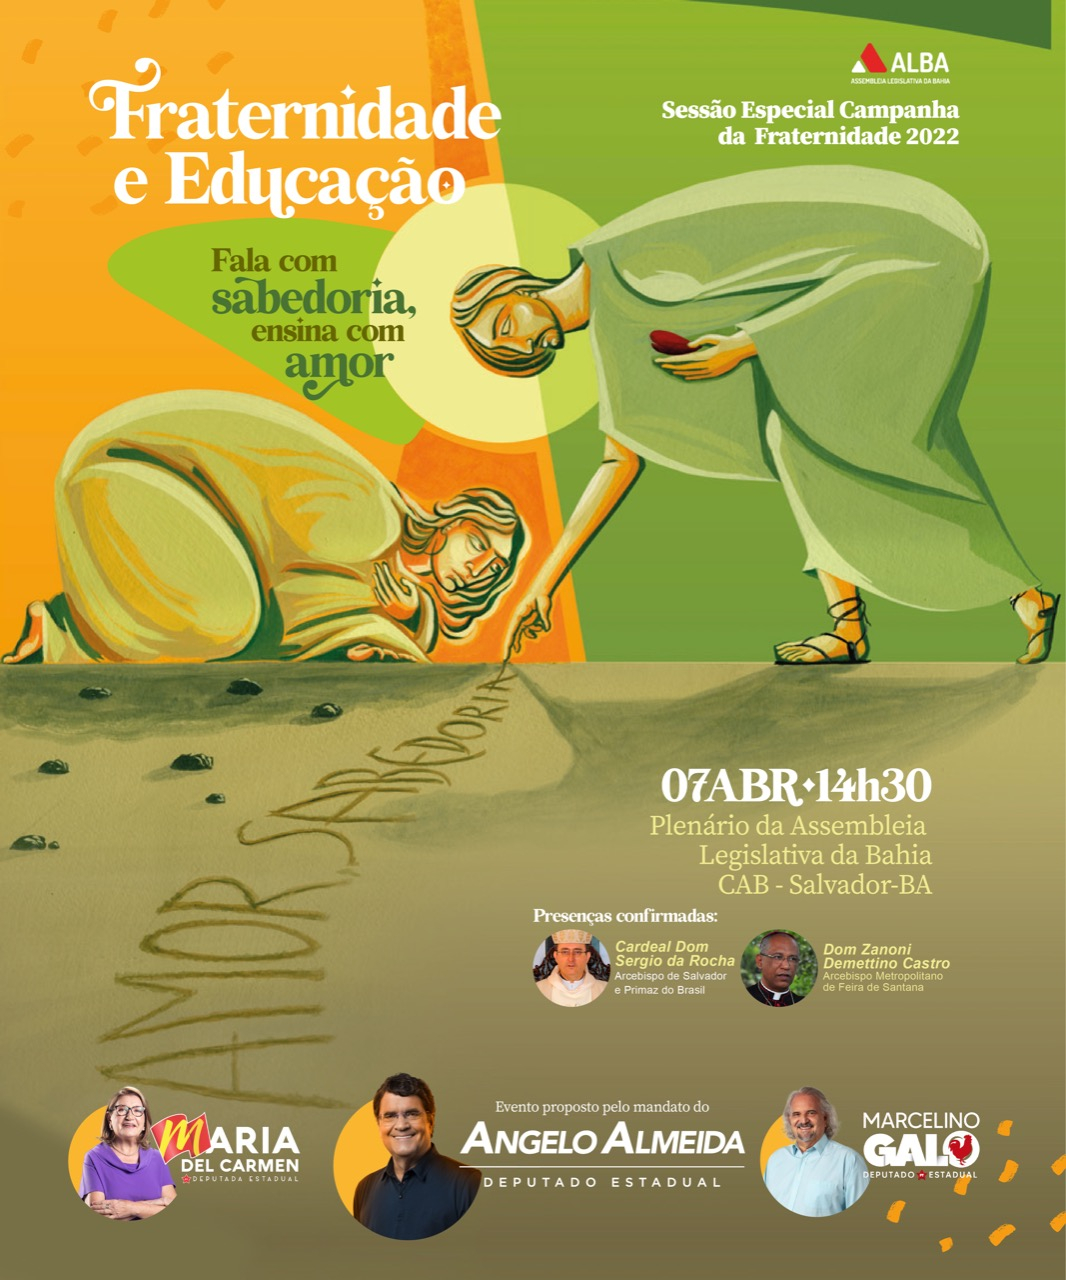 Proposta por Angelo Almeida, Alba realiza Sessão Especial Campanha da Fraternidade 2022